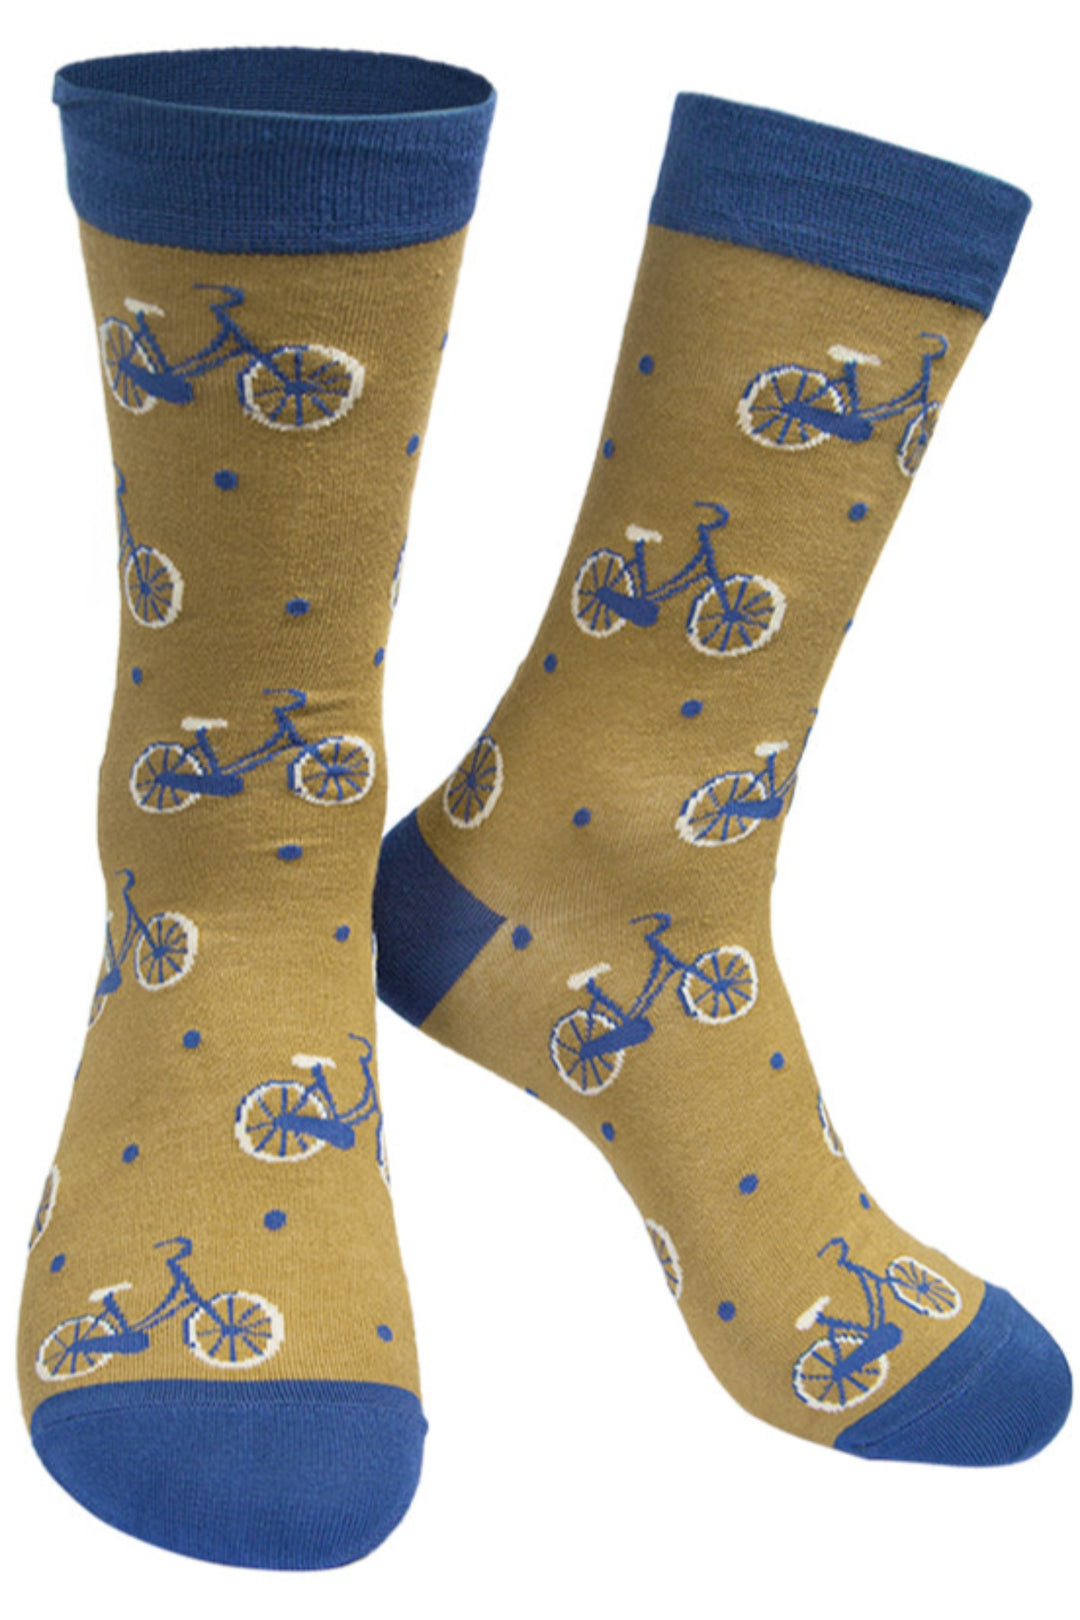 Mens Bamboo Cycling Socks Bicycle Print Novelty Sock Mustard